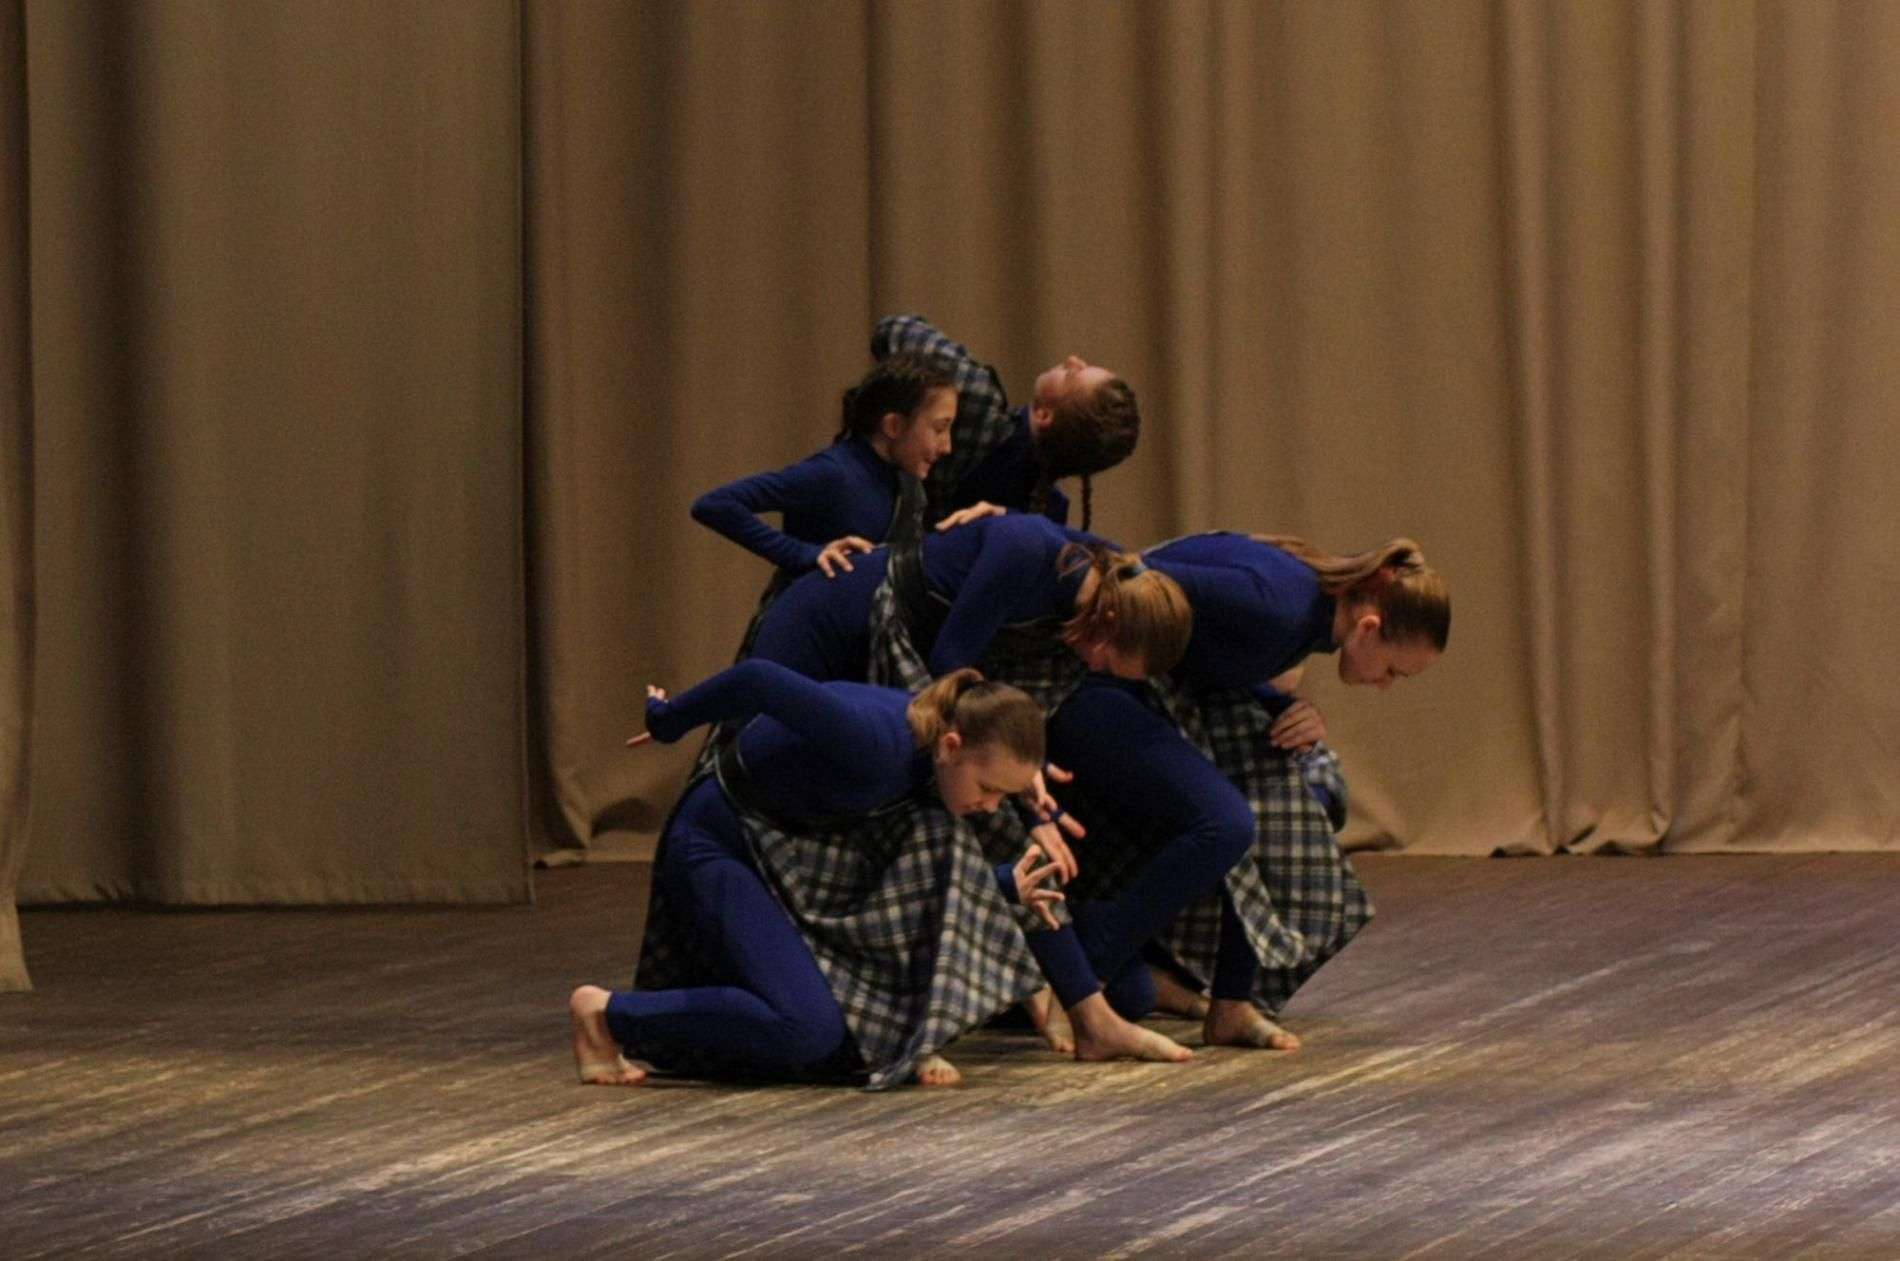 Танцевальный коллектив «Эльдорадо» из Бердска наградили денежным призом на конкурсе-фестивале в Новосибирске 